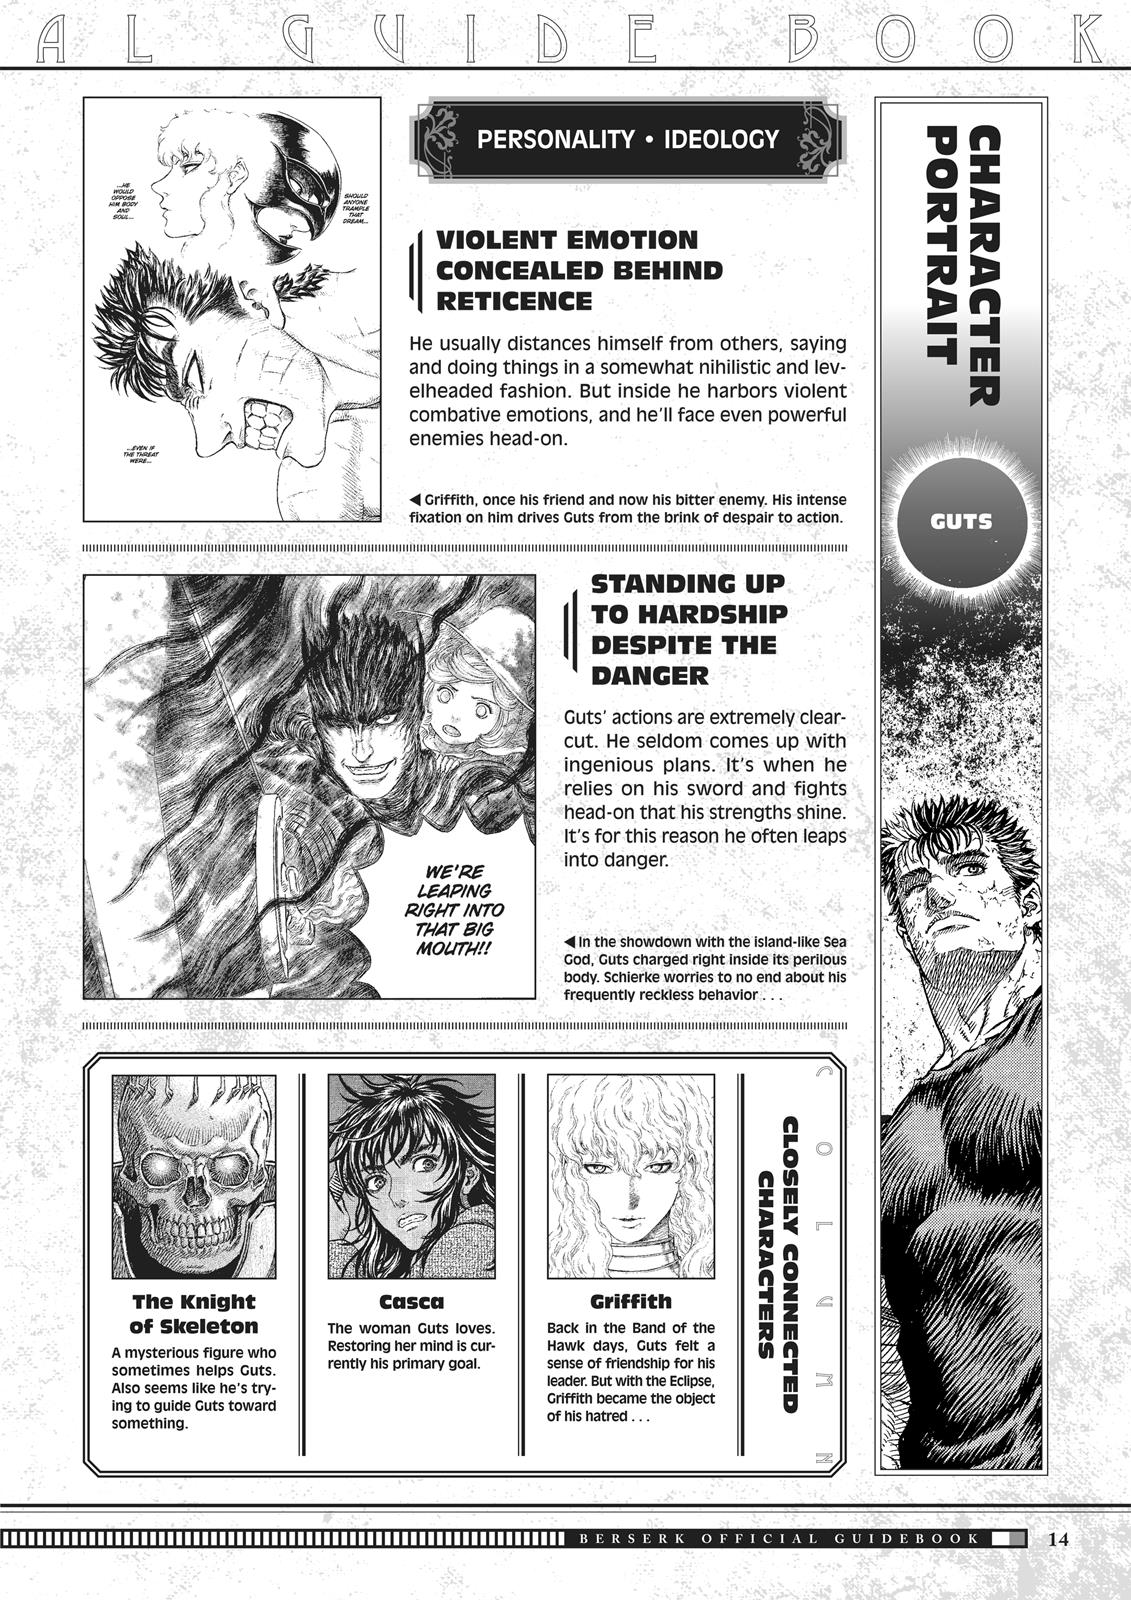 Berserk Manga Chapter 350.5 image 015